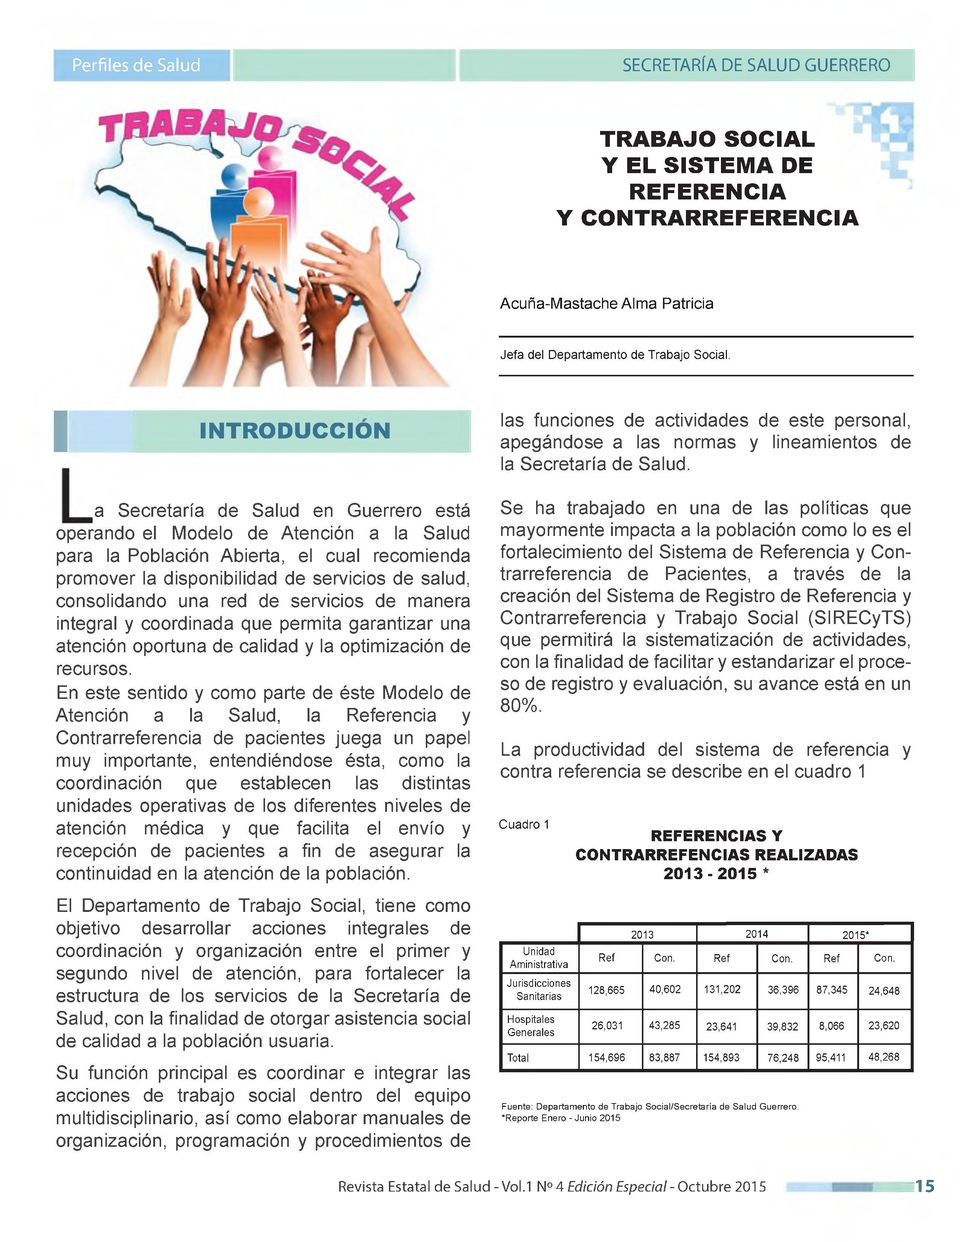 a Secretaría de Salud en Guerrero está operando el Modelo de Atención a la Salud para la Población Abierta, el cual recomienda promover la disponibilidad de servicios de salud, consolidando una red